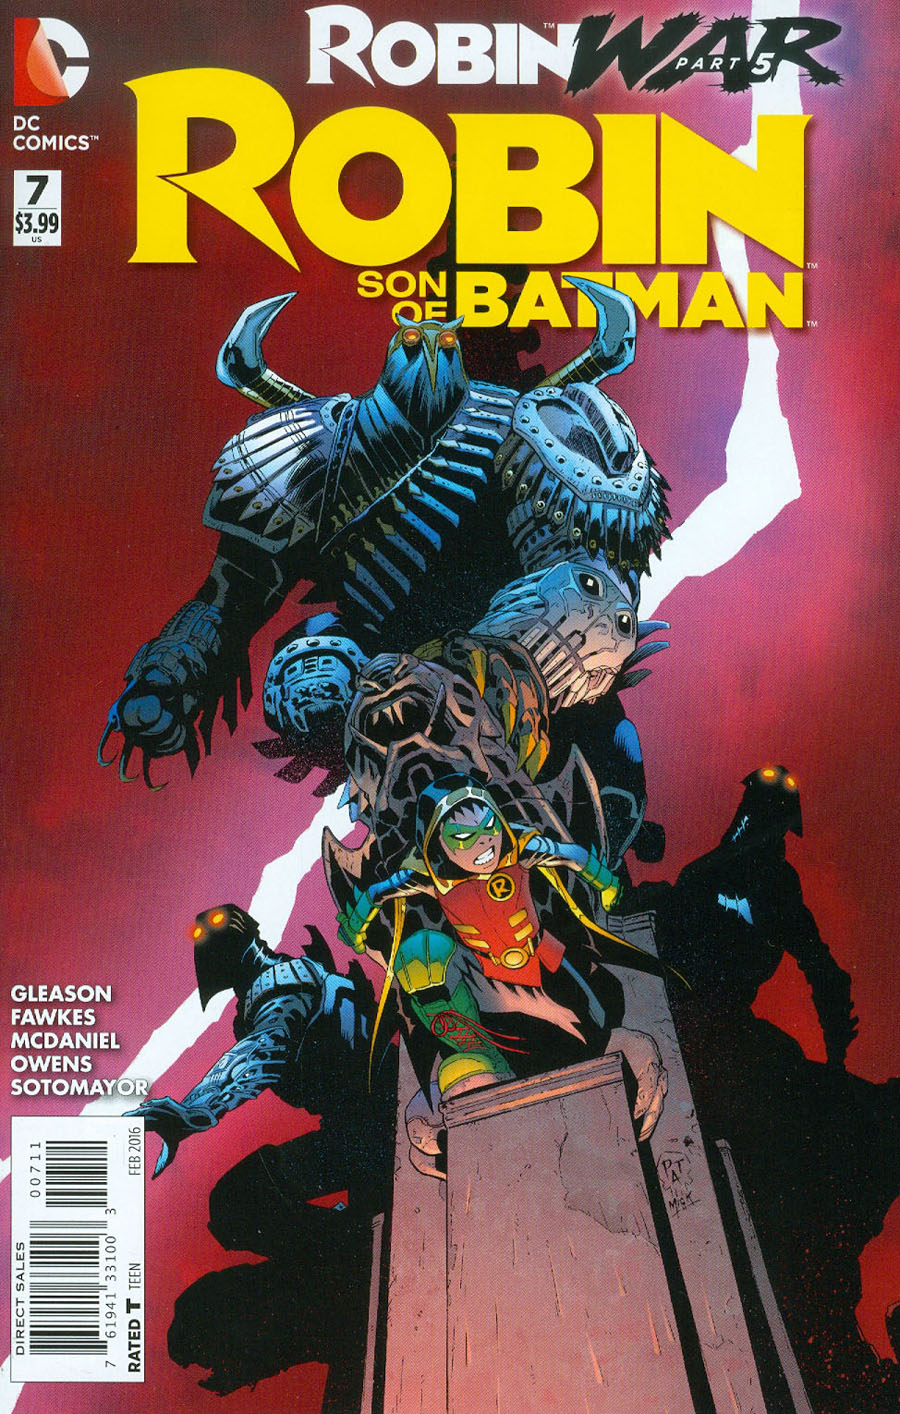 Robin Son Of Batman #7 (Robin War Part 5)